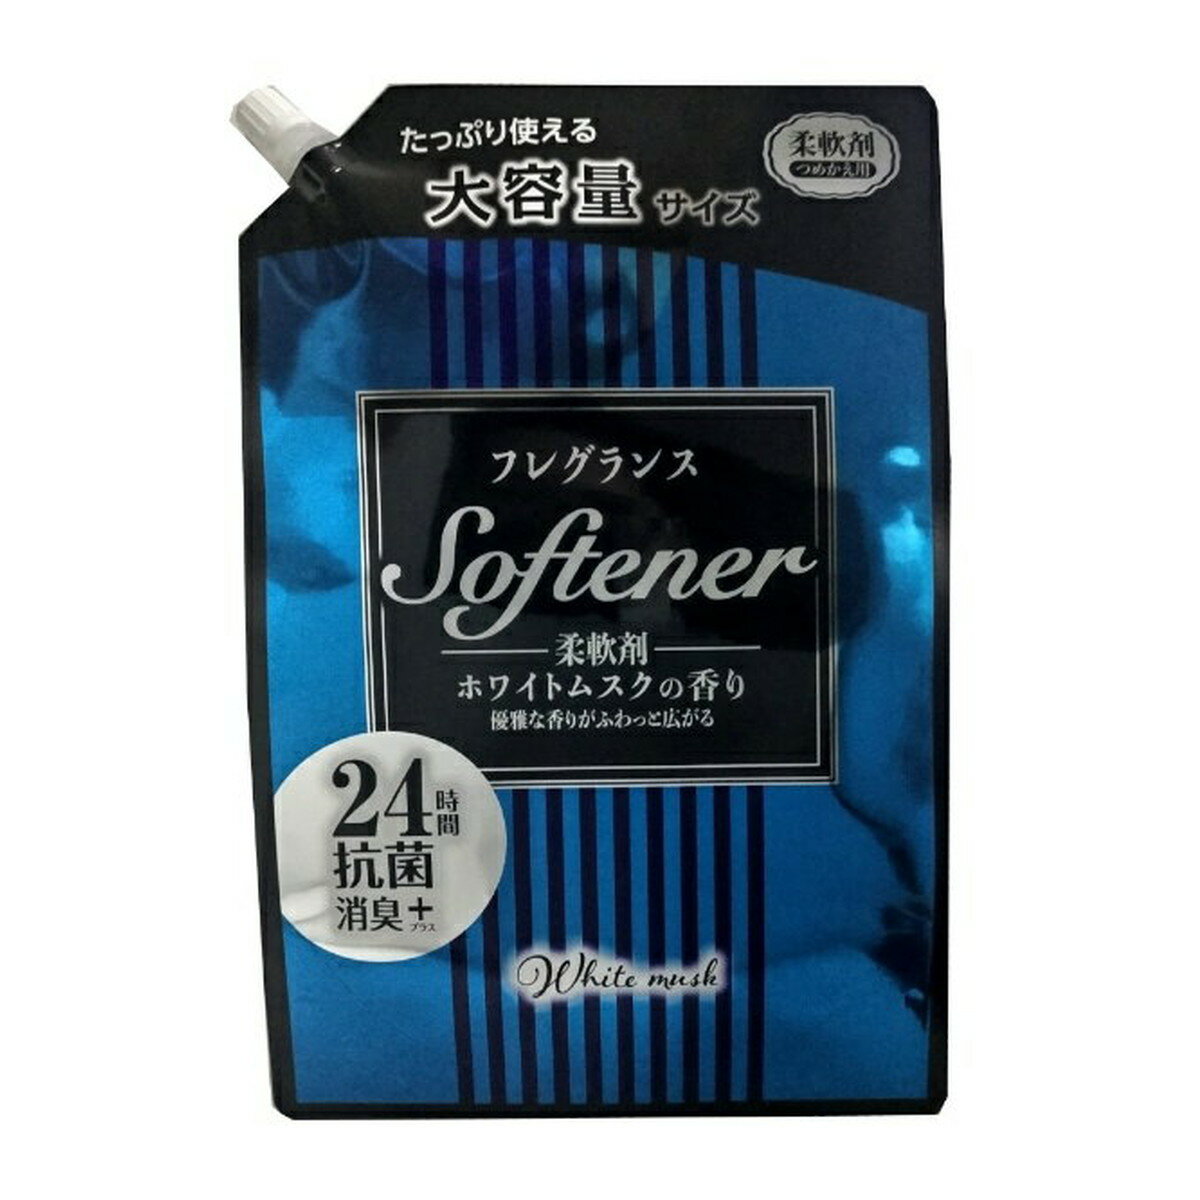 日本合成洗剤 フレグランスソフタ